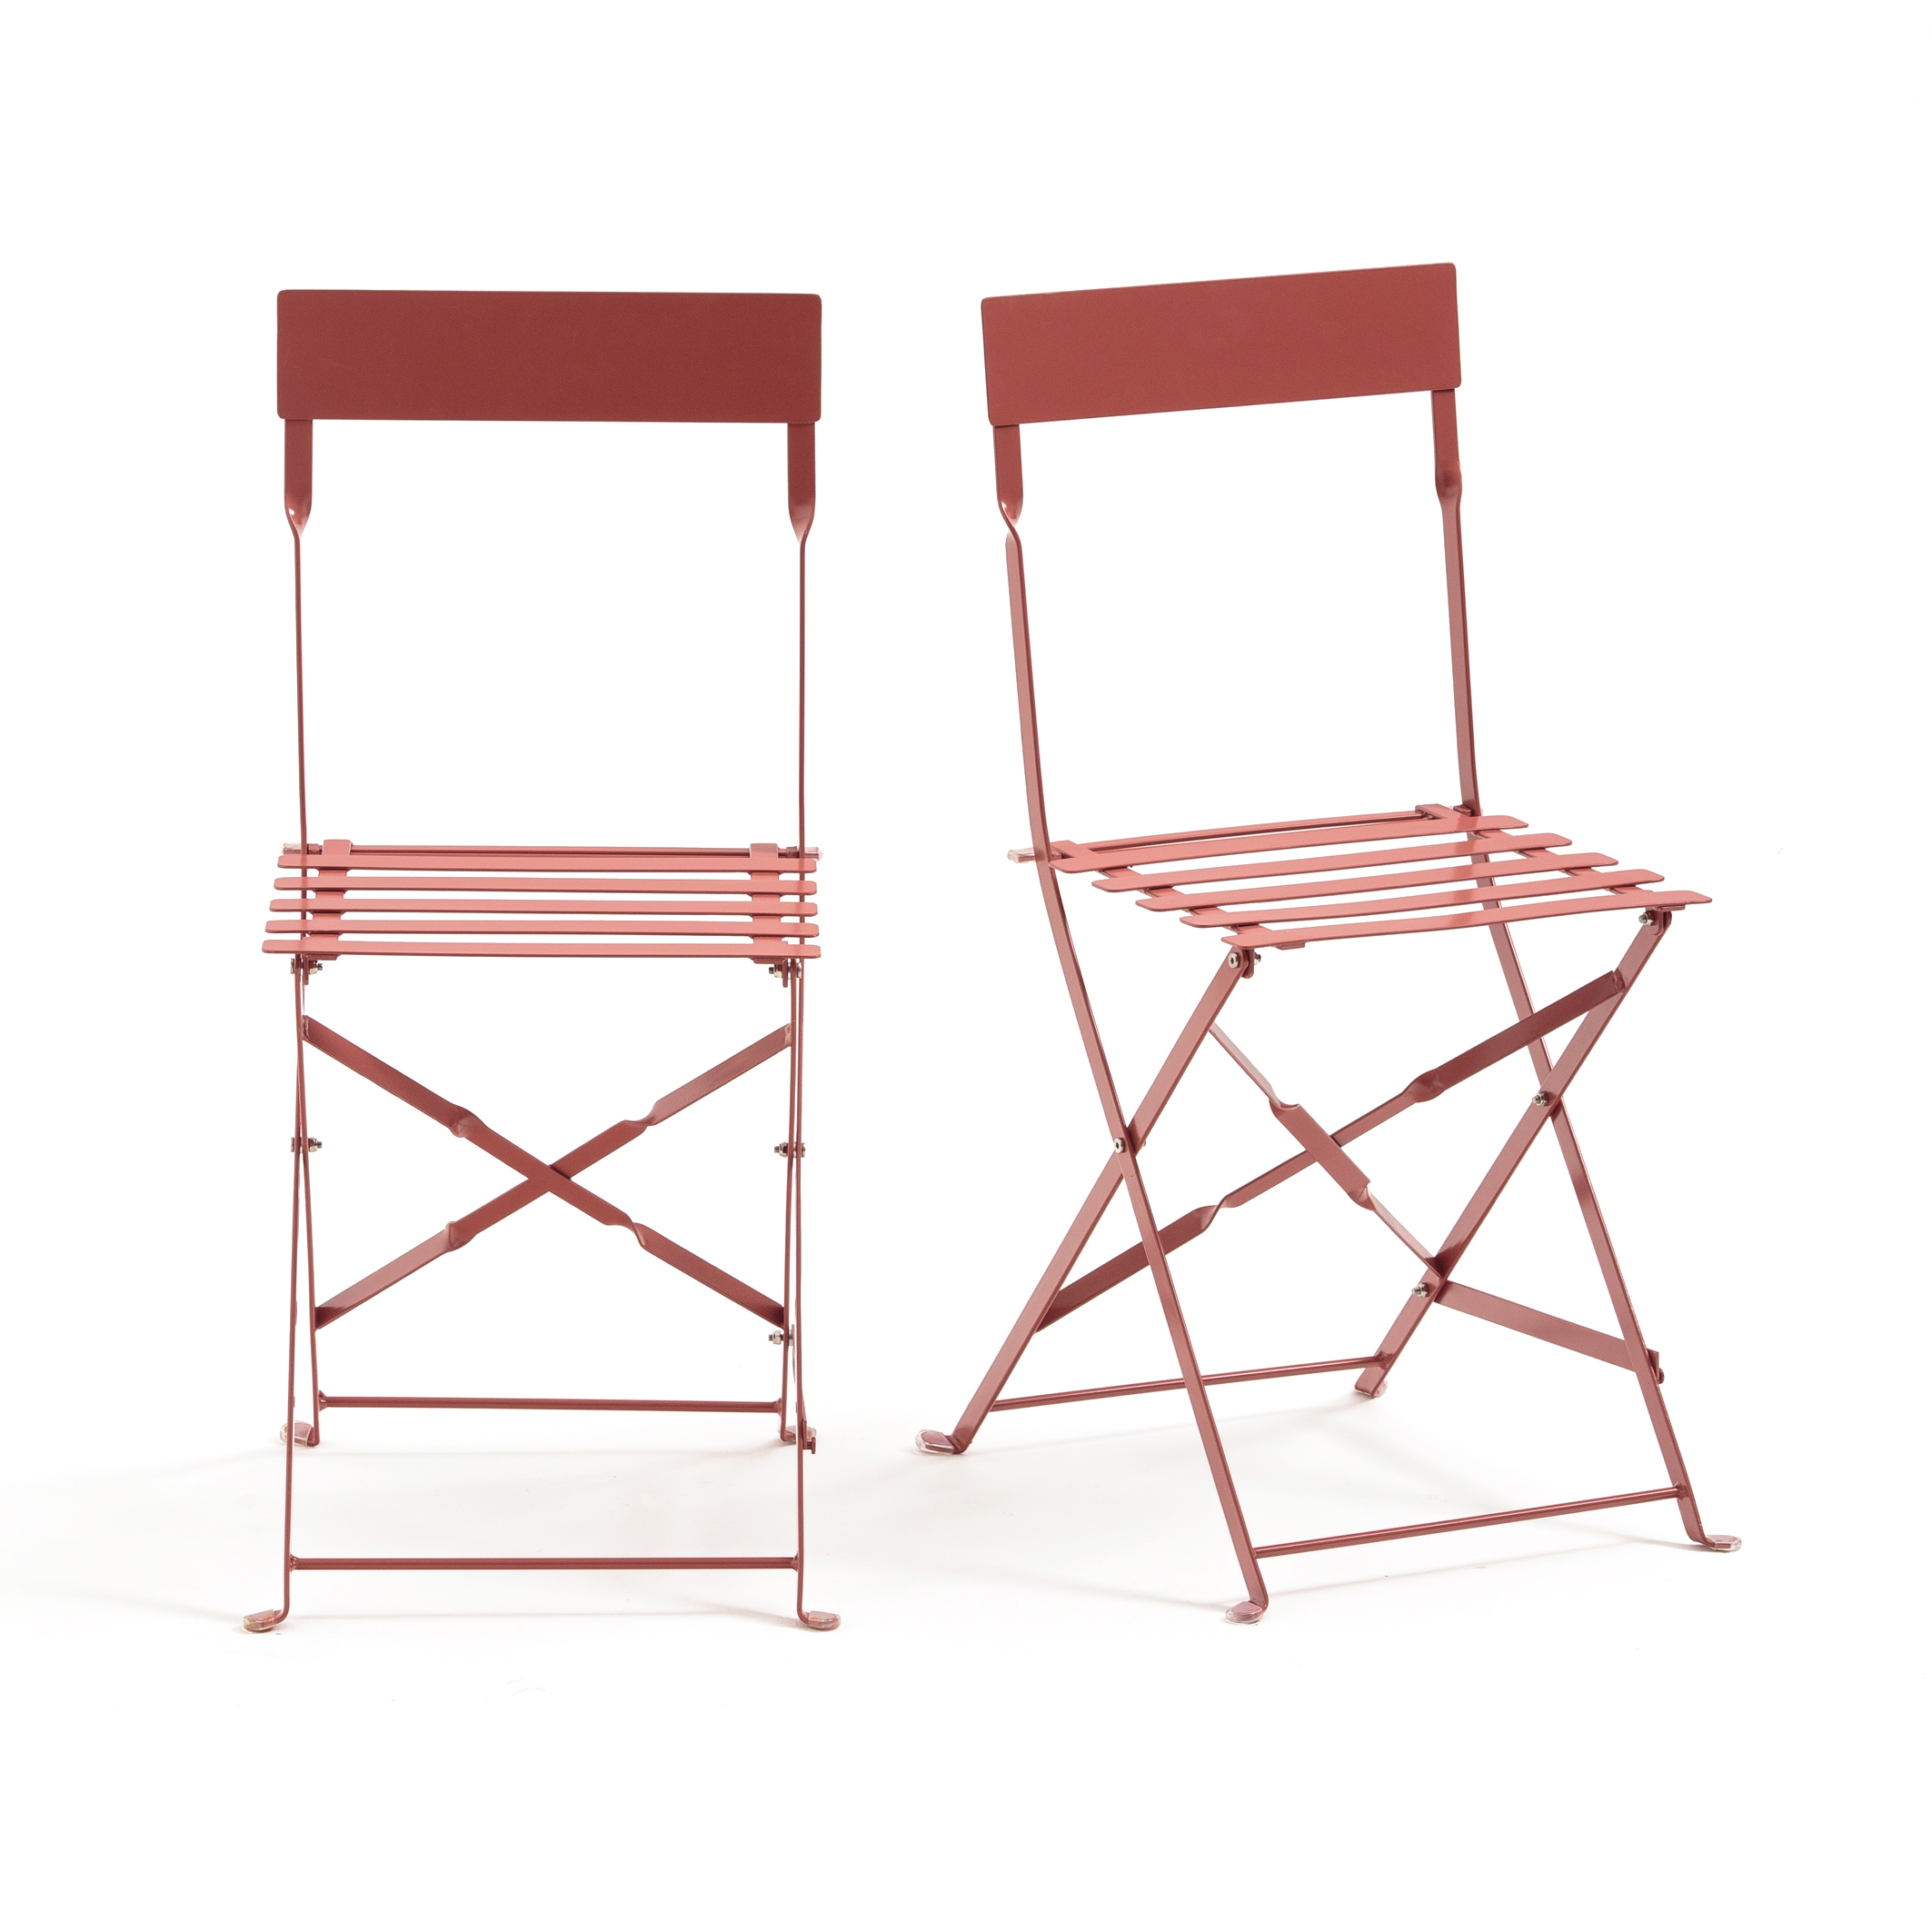 Стул складной металл. La Redoute стулья складные. Стул складной folder (Mod. 032). Стул складной металлический. Складные металлические стулья.